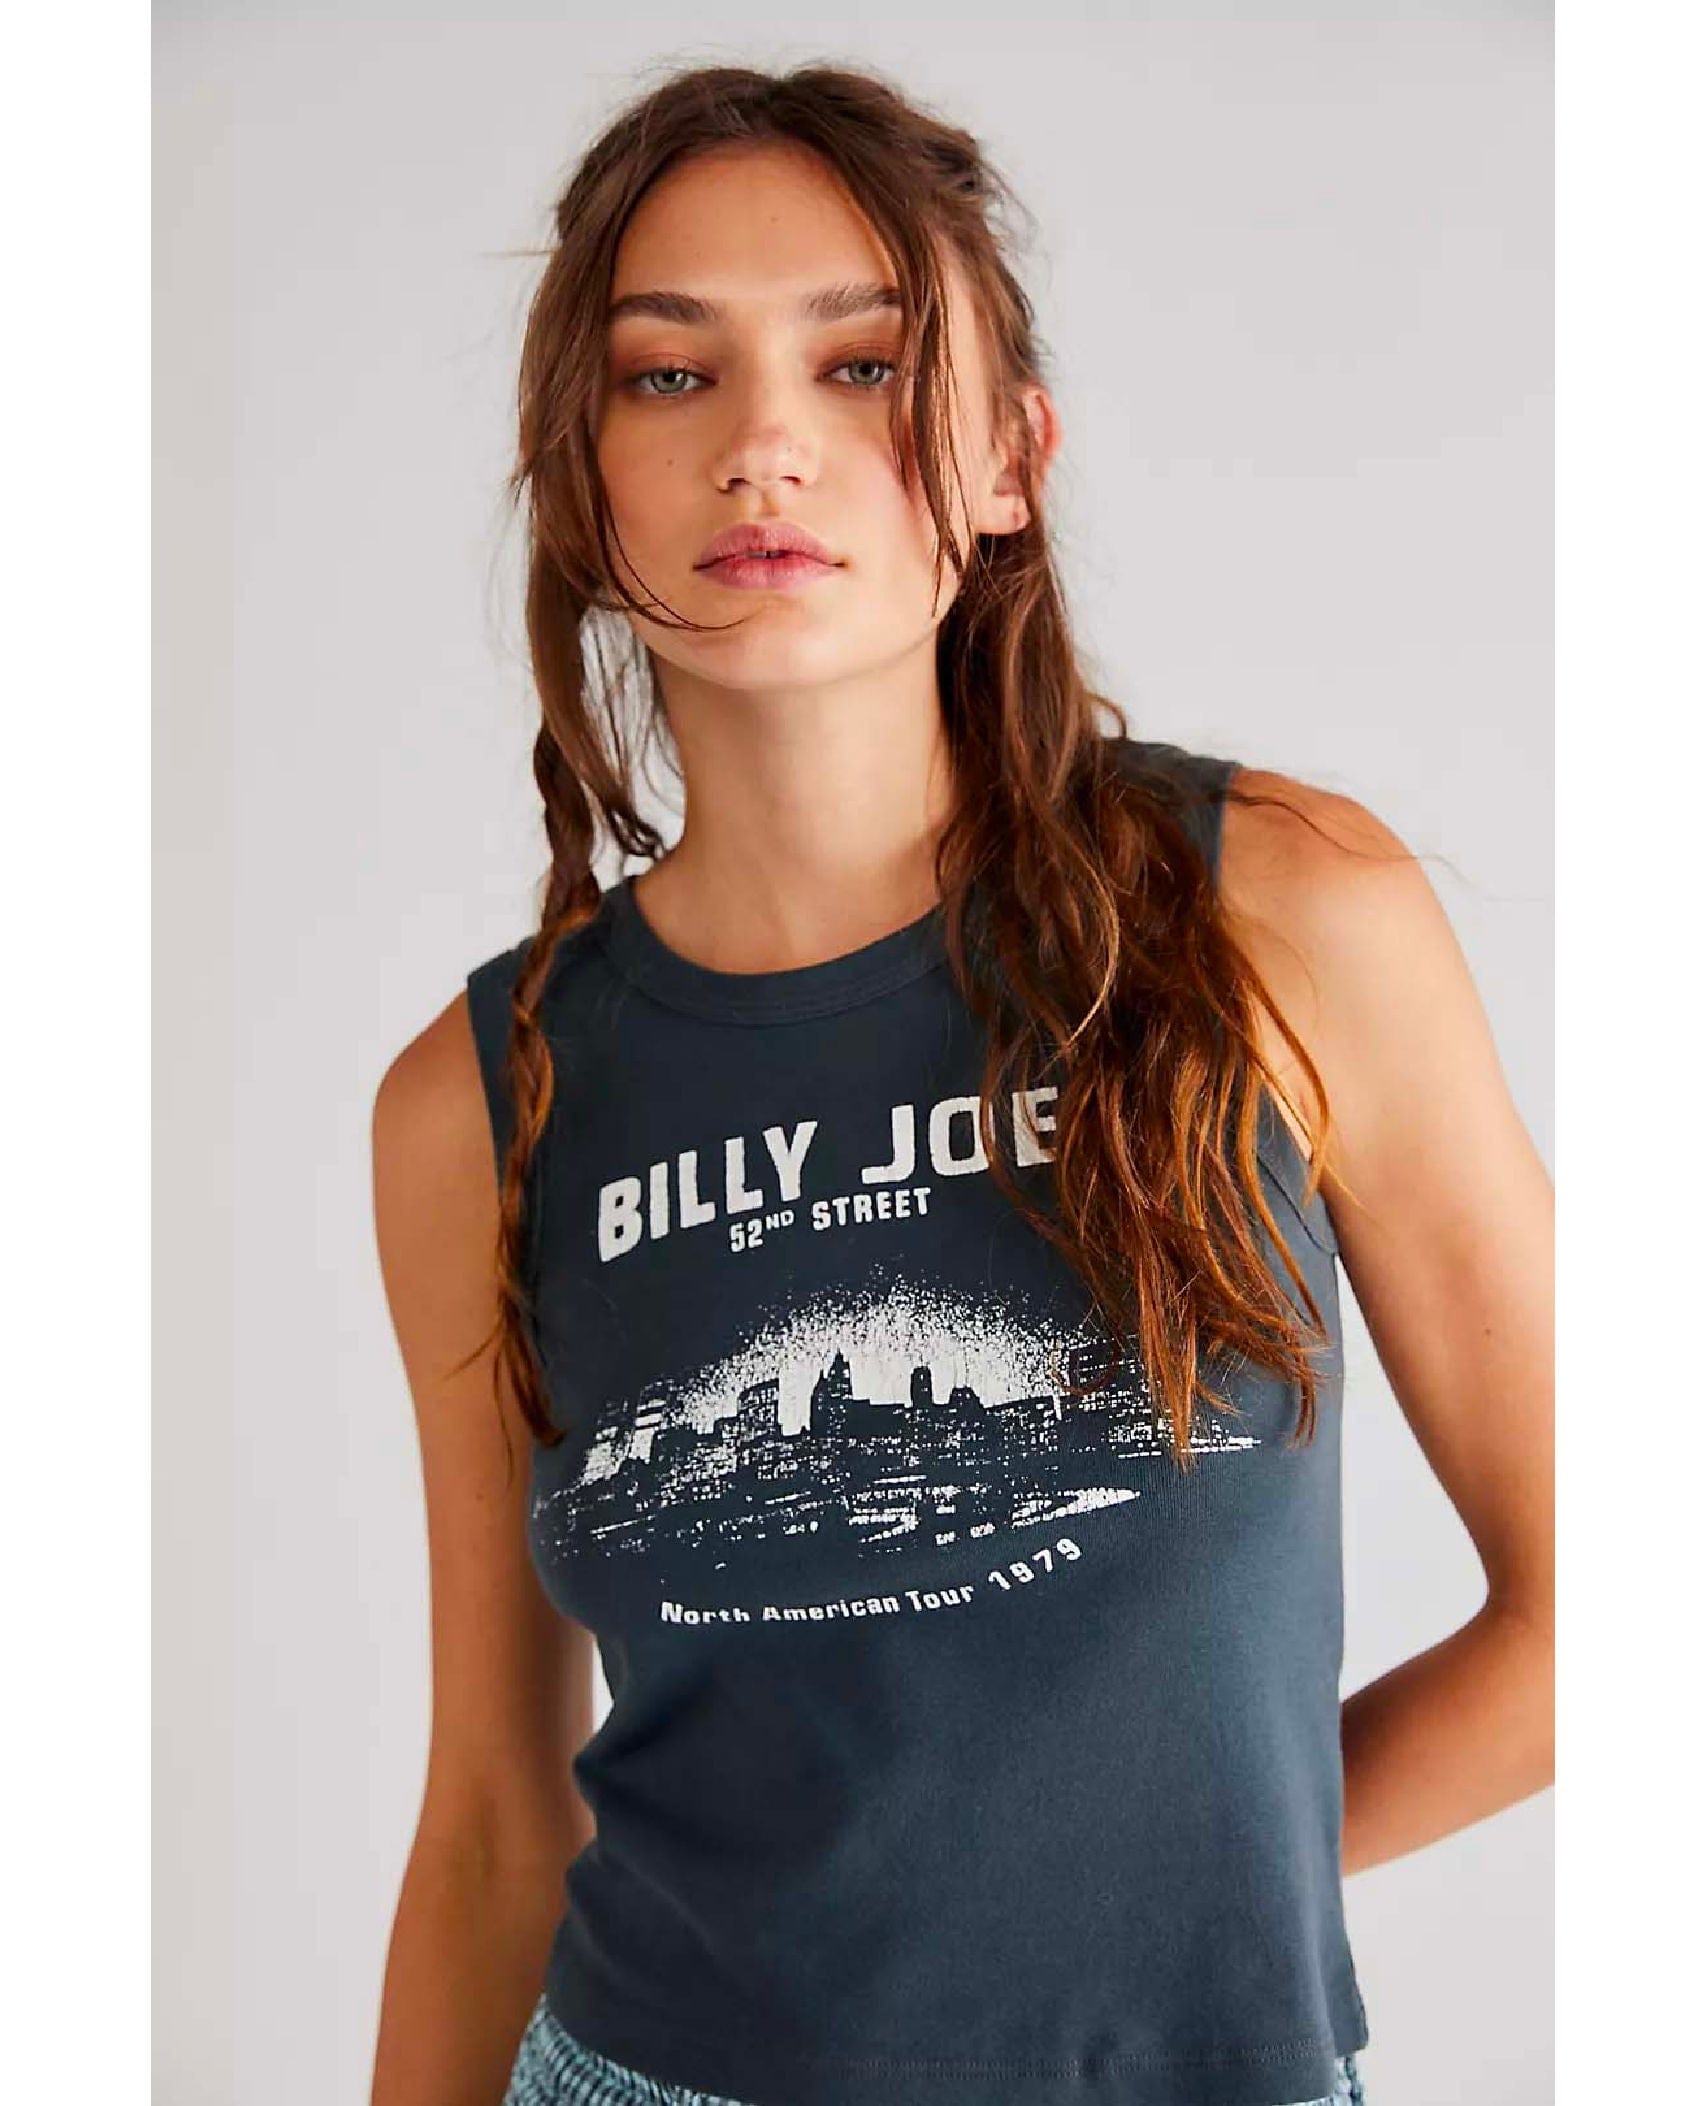 Billy Joel 52nd Street Cityscape Tank